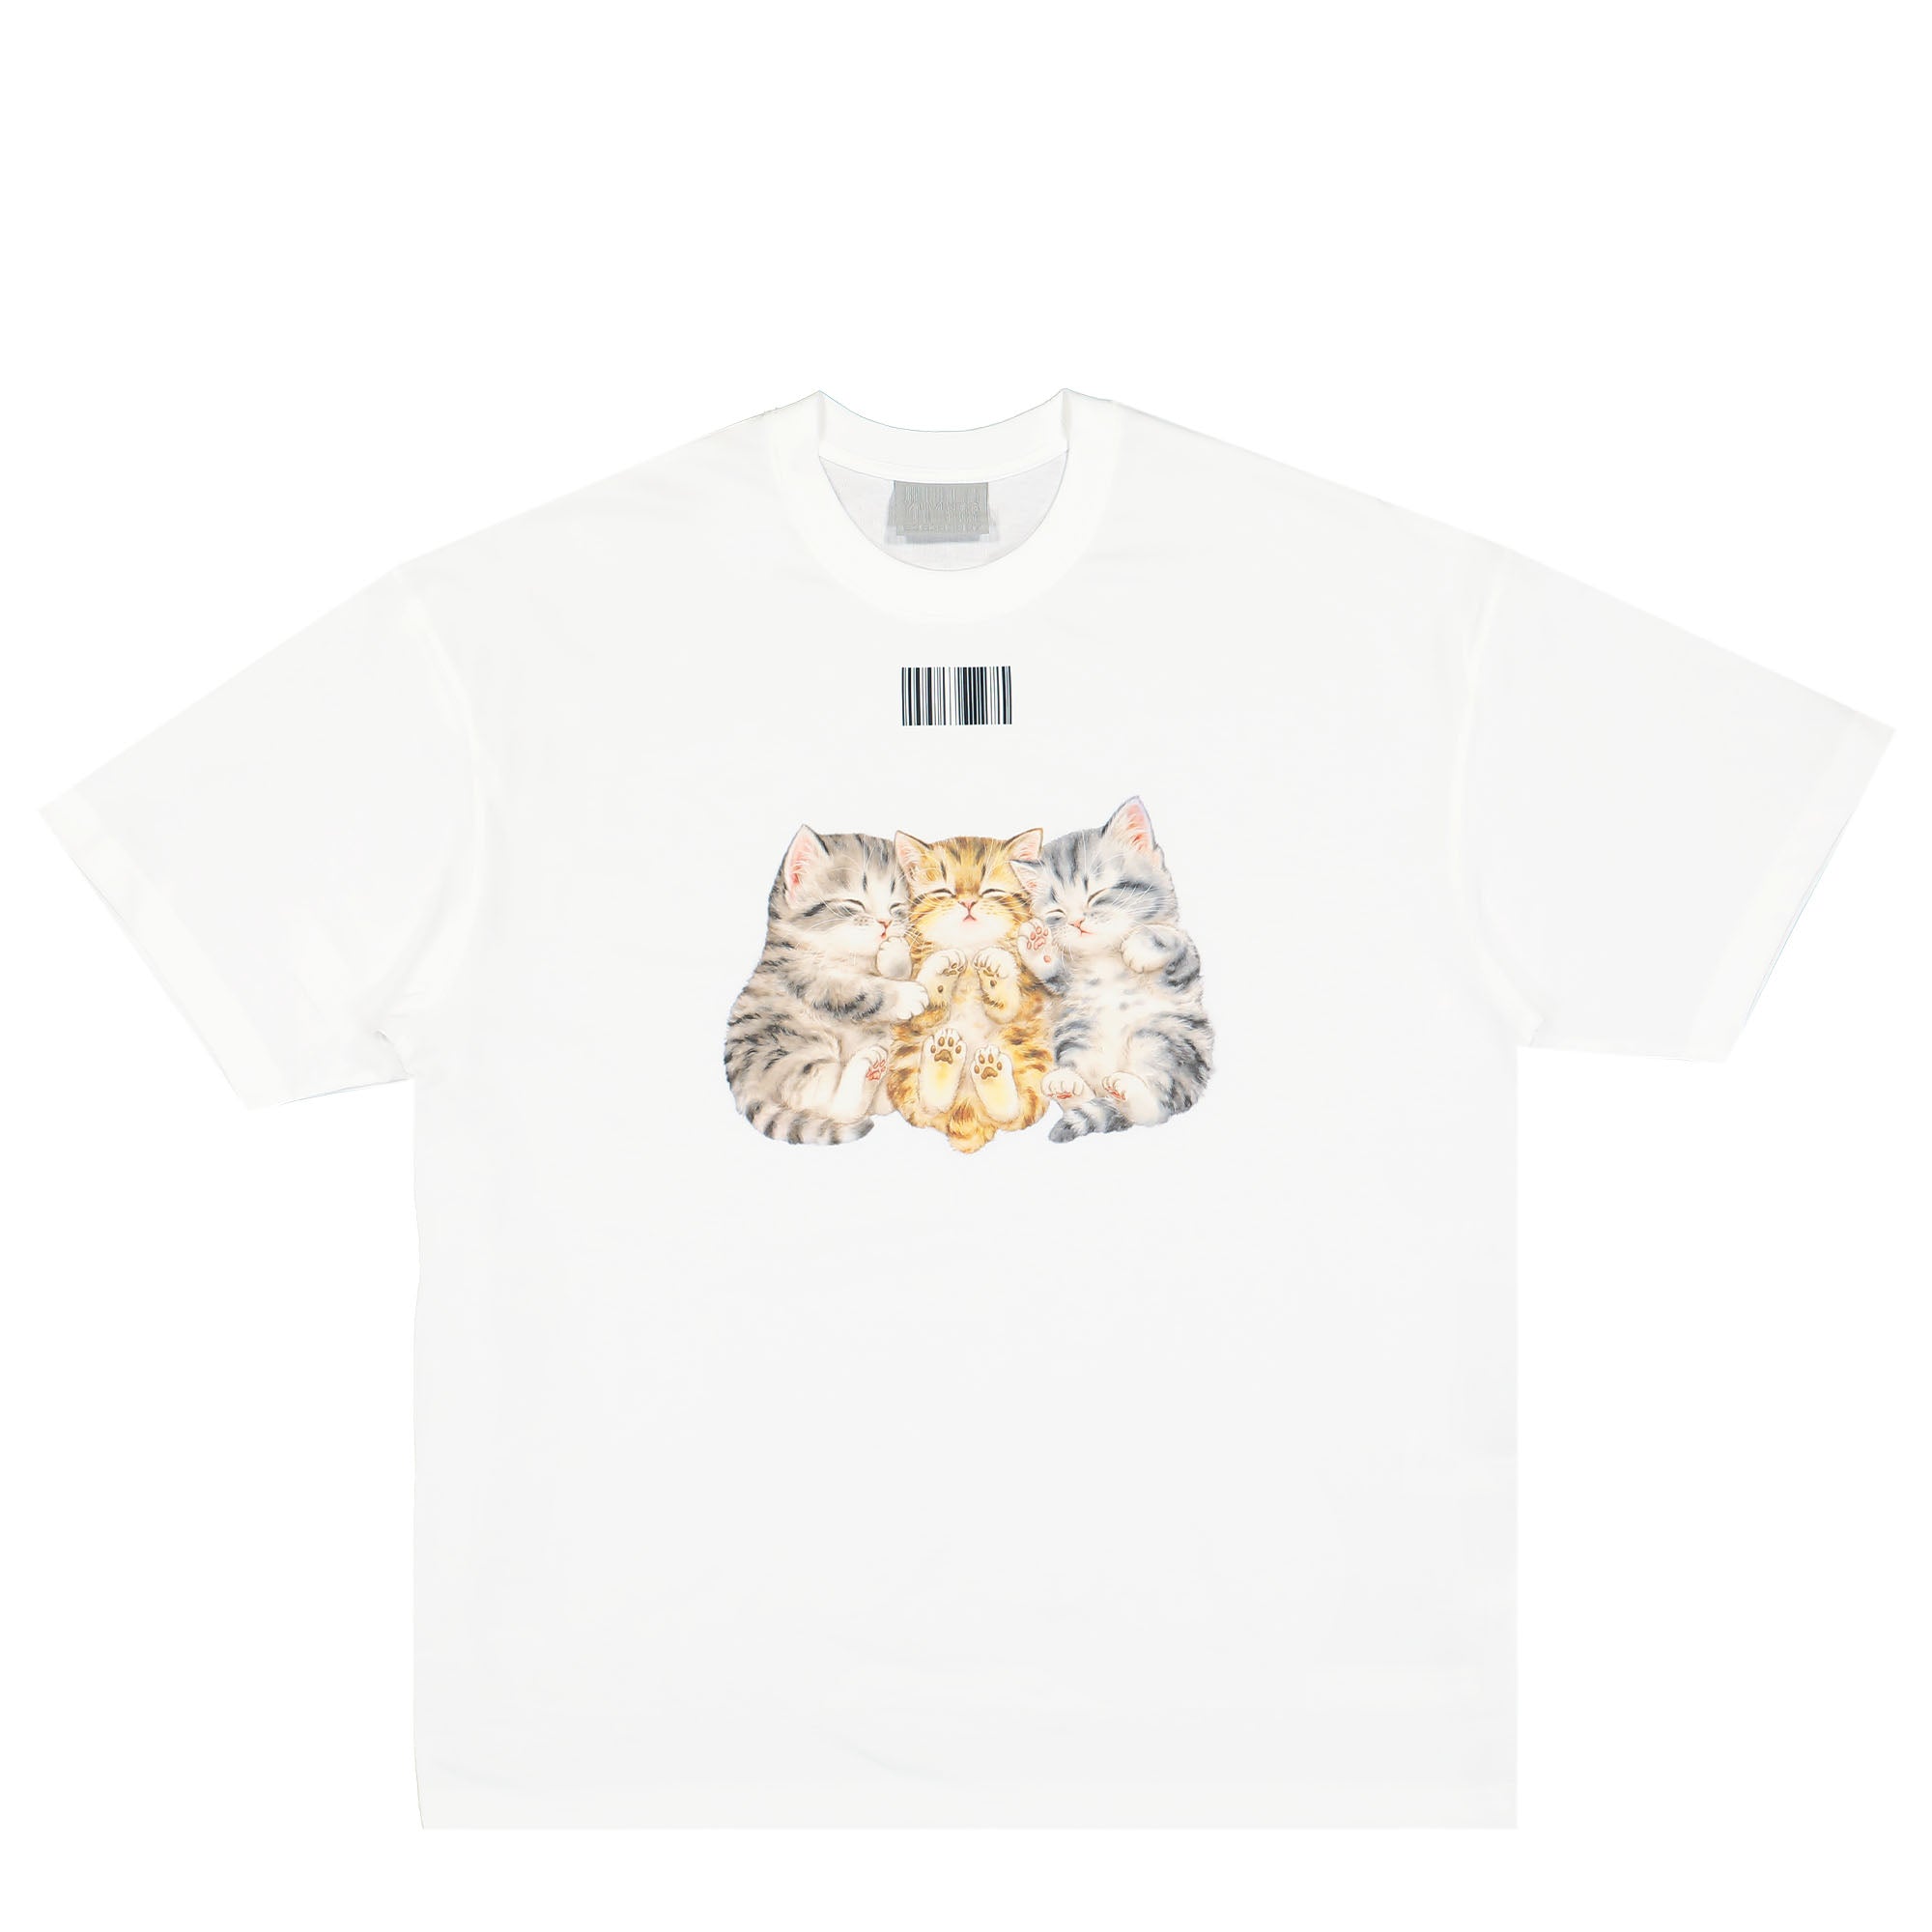 14,574円Vtmnts Cat Tee キャット 猫 Tシャツ Vetements